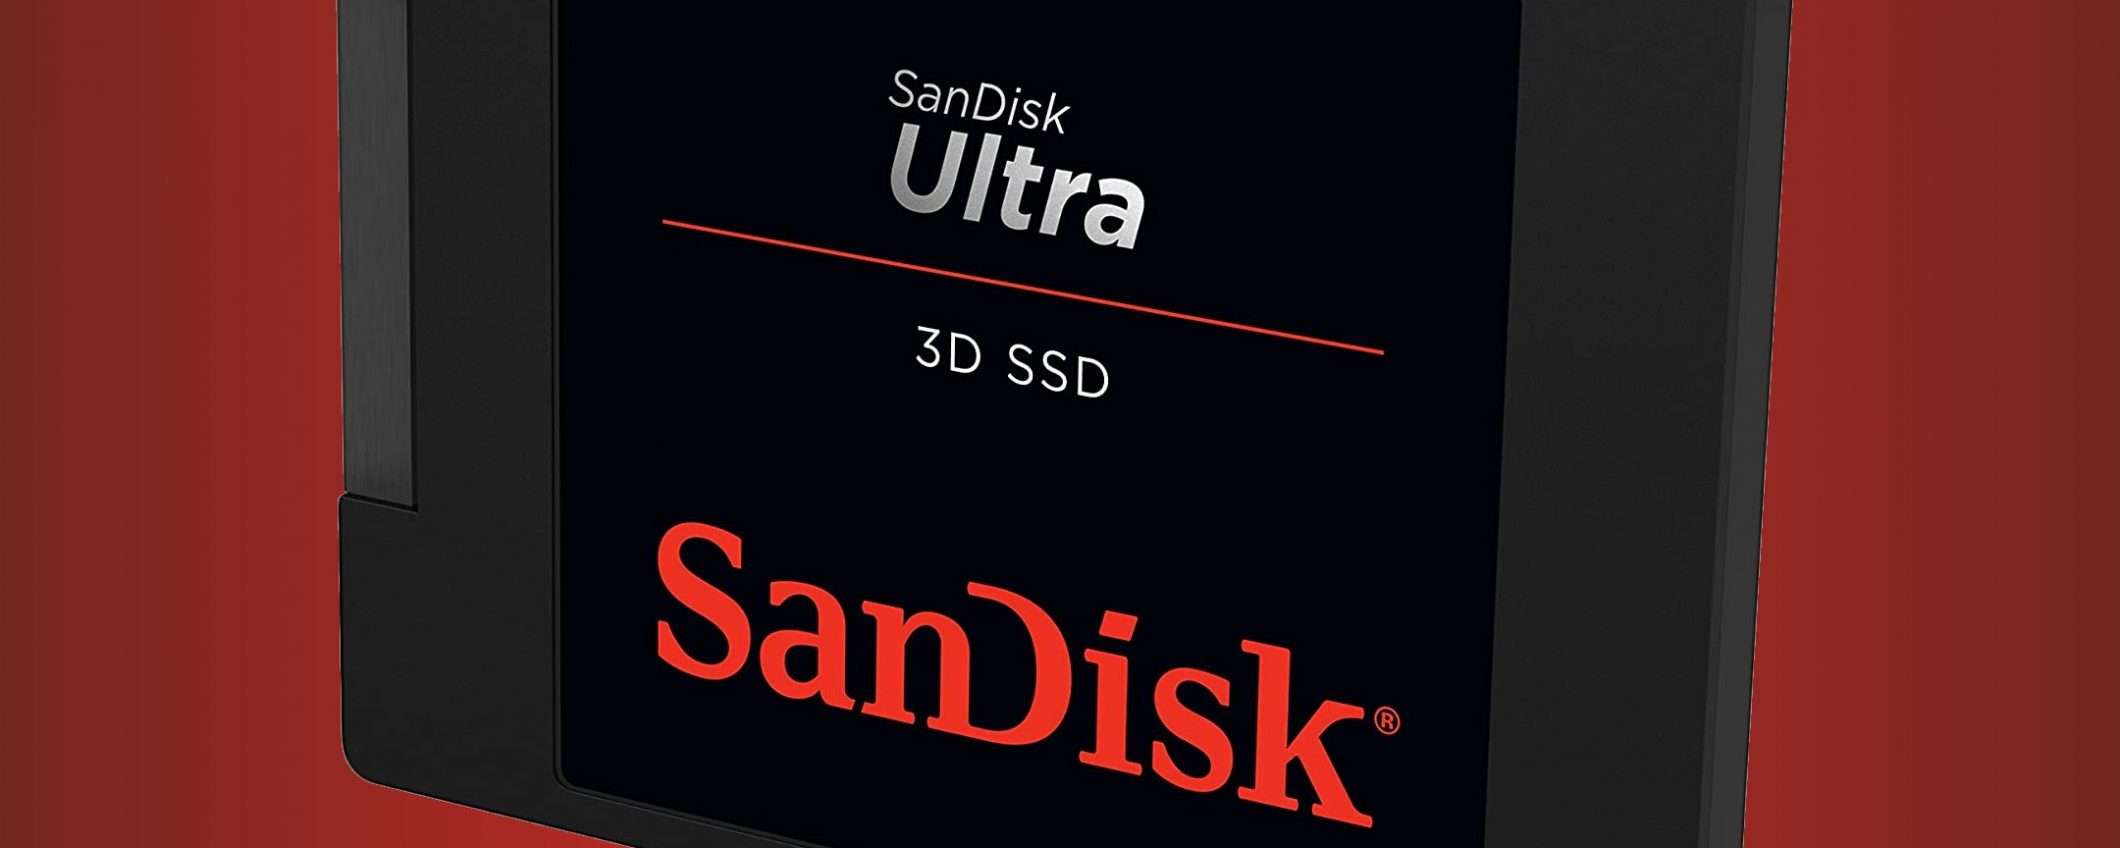 SanDisk SSD, 1 TB a tutta velocità: oggi, su Amazon